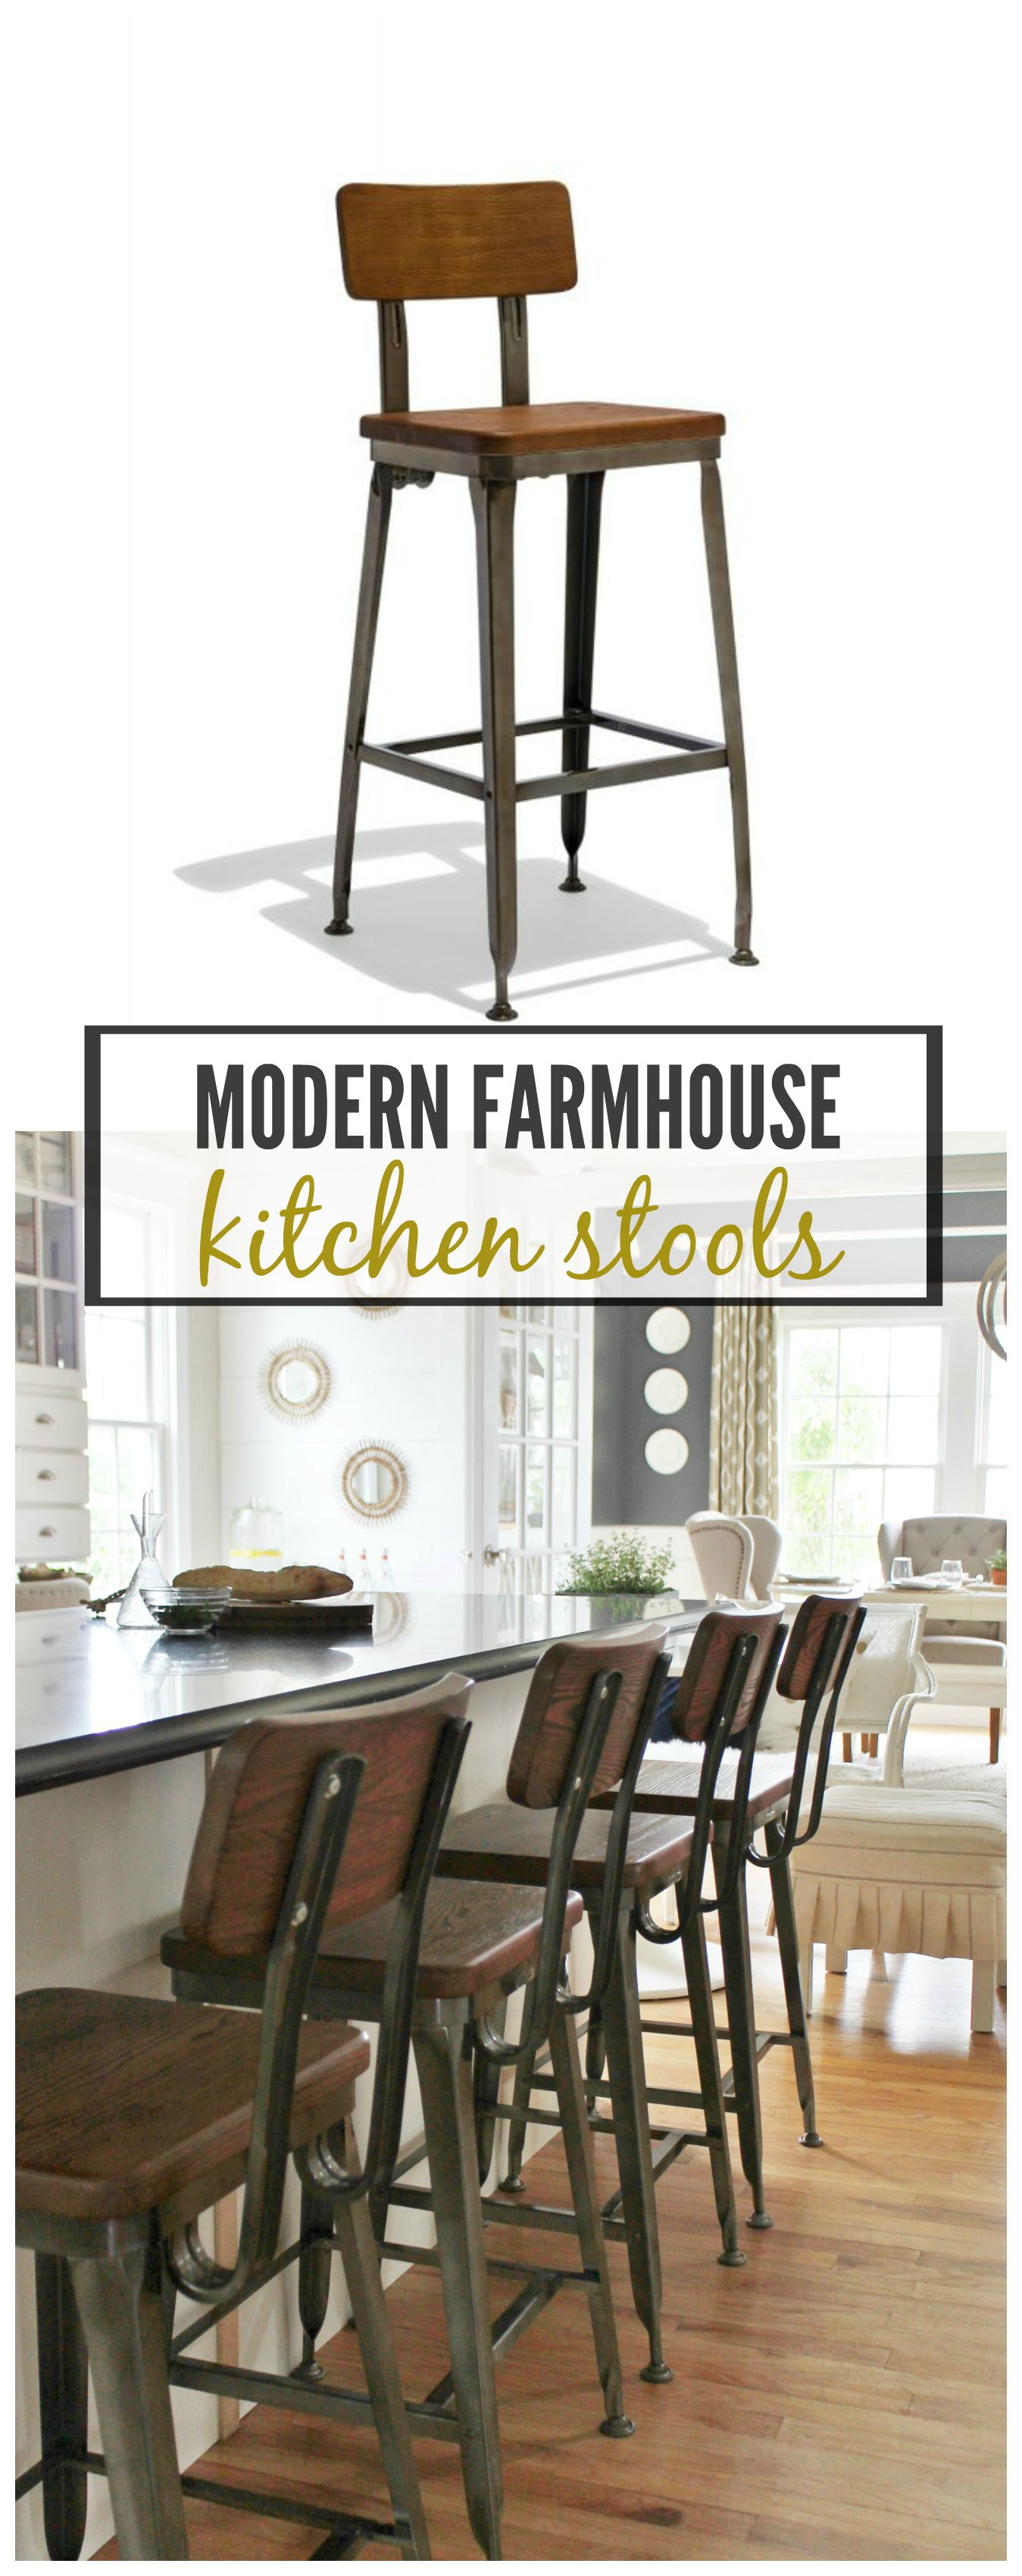 Modern Farmhouse Kitchen Barstools, Farmhouse Style Kitchen Counter Stools